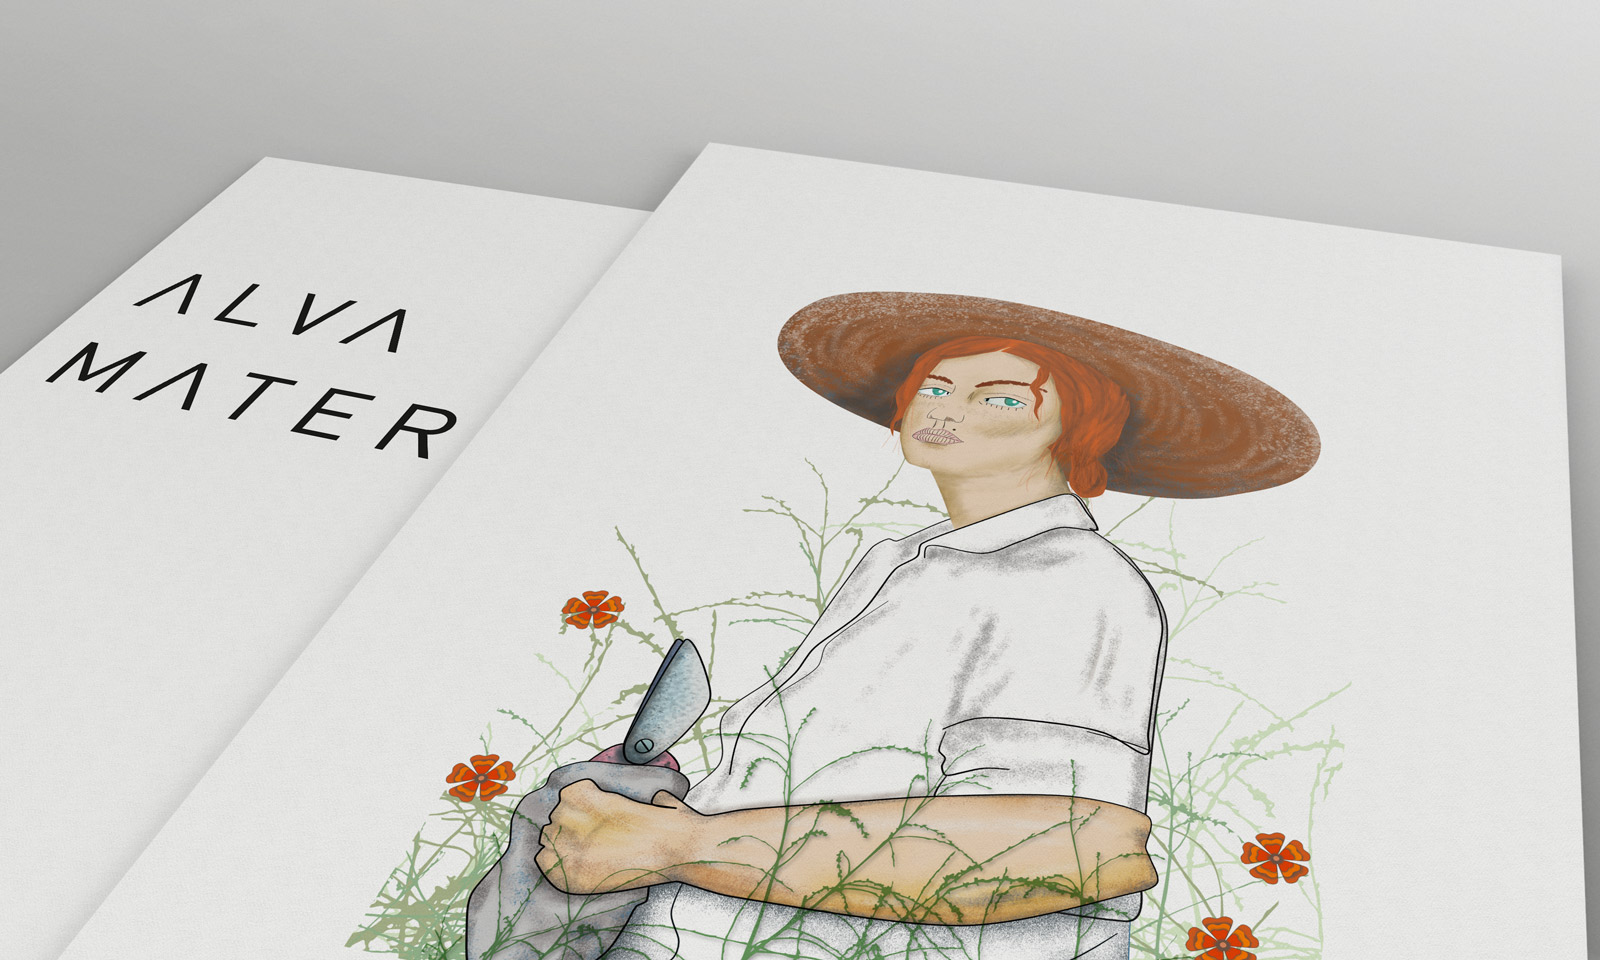 Diseño gráfico y creativo de etiquetas formato sleeve y packaging de vino para ALVA MATER